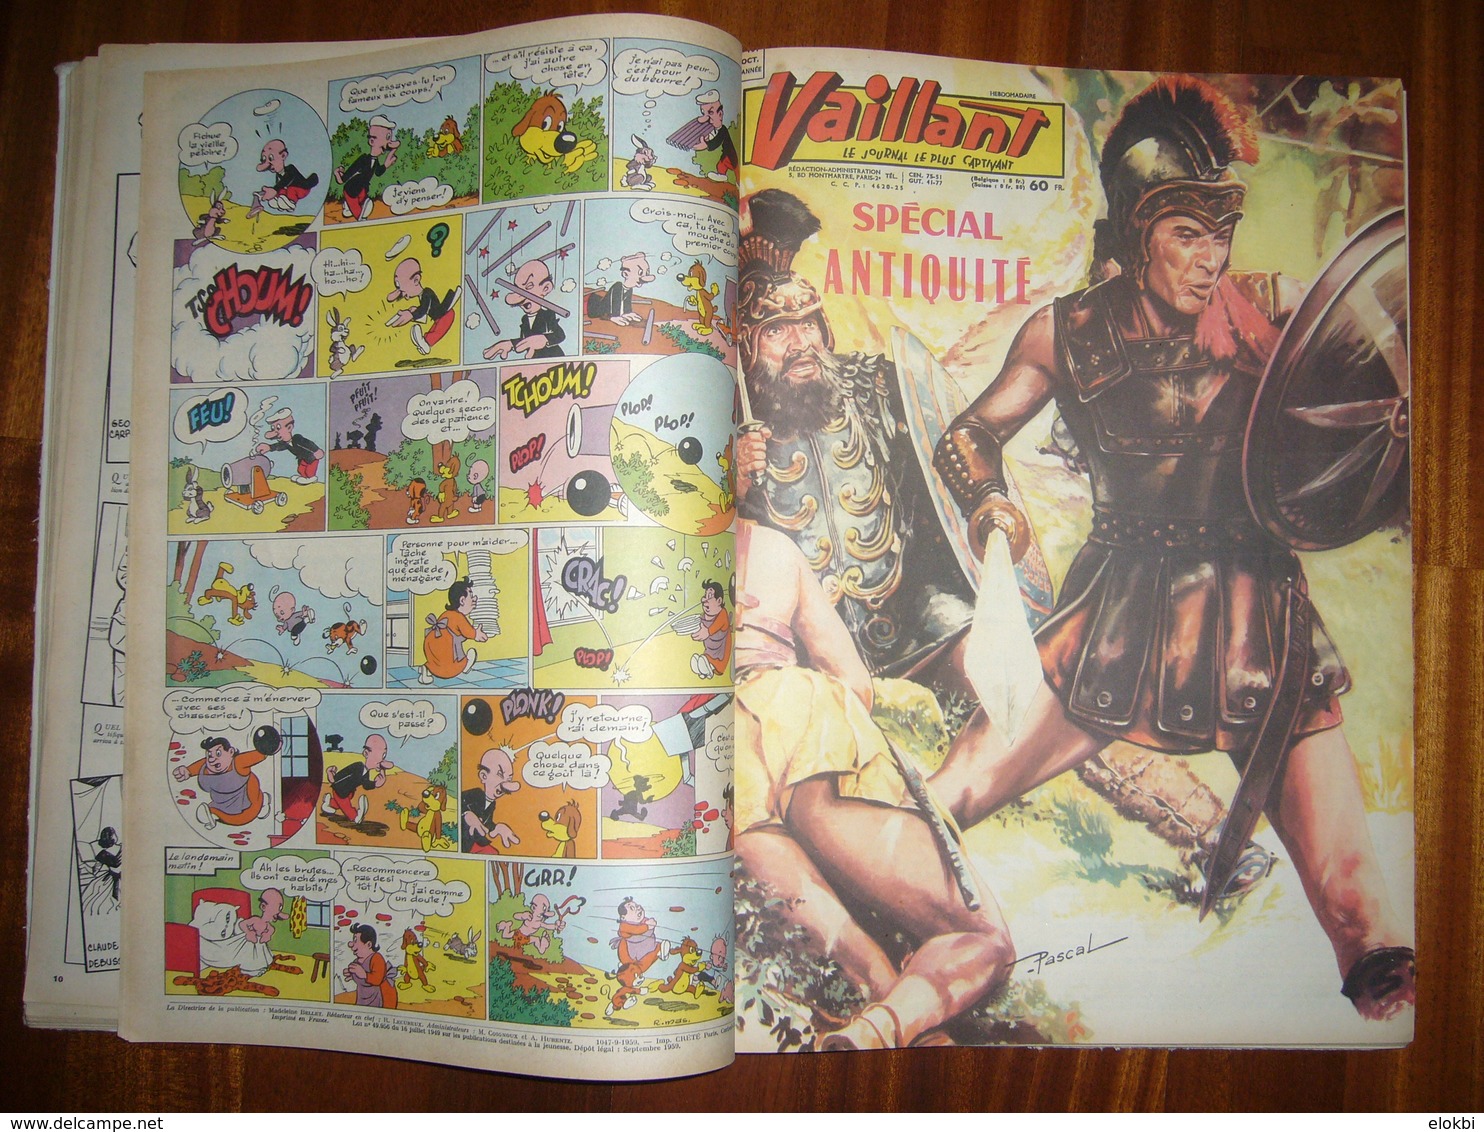 Album Vaillant n° 14 [Série n°2] Revues n° 746 à 758 incluses de l'année 1959 - Voir description détaillée